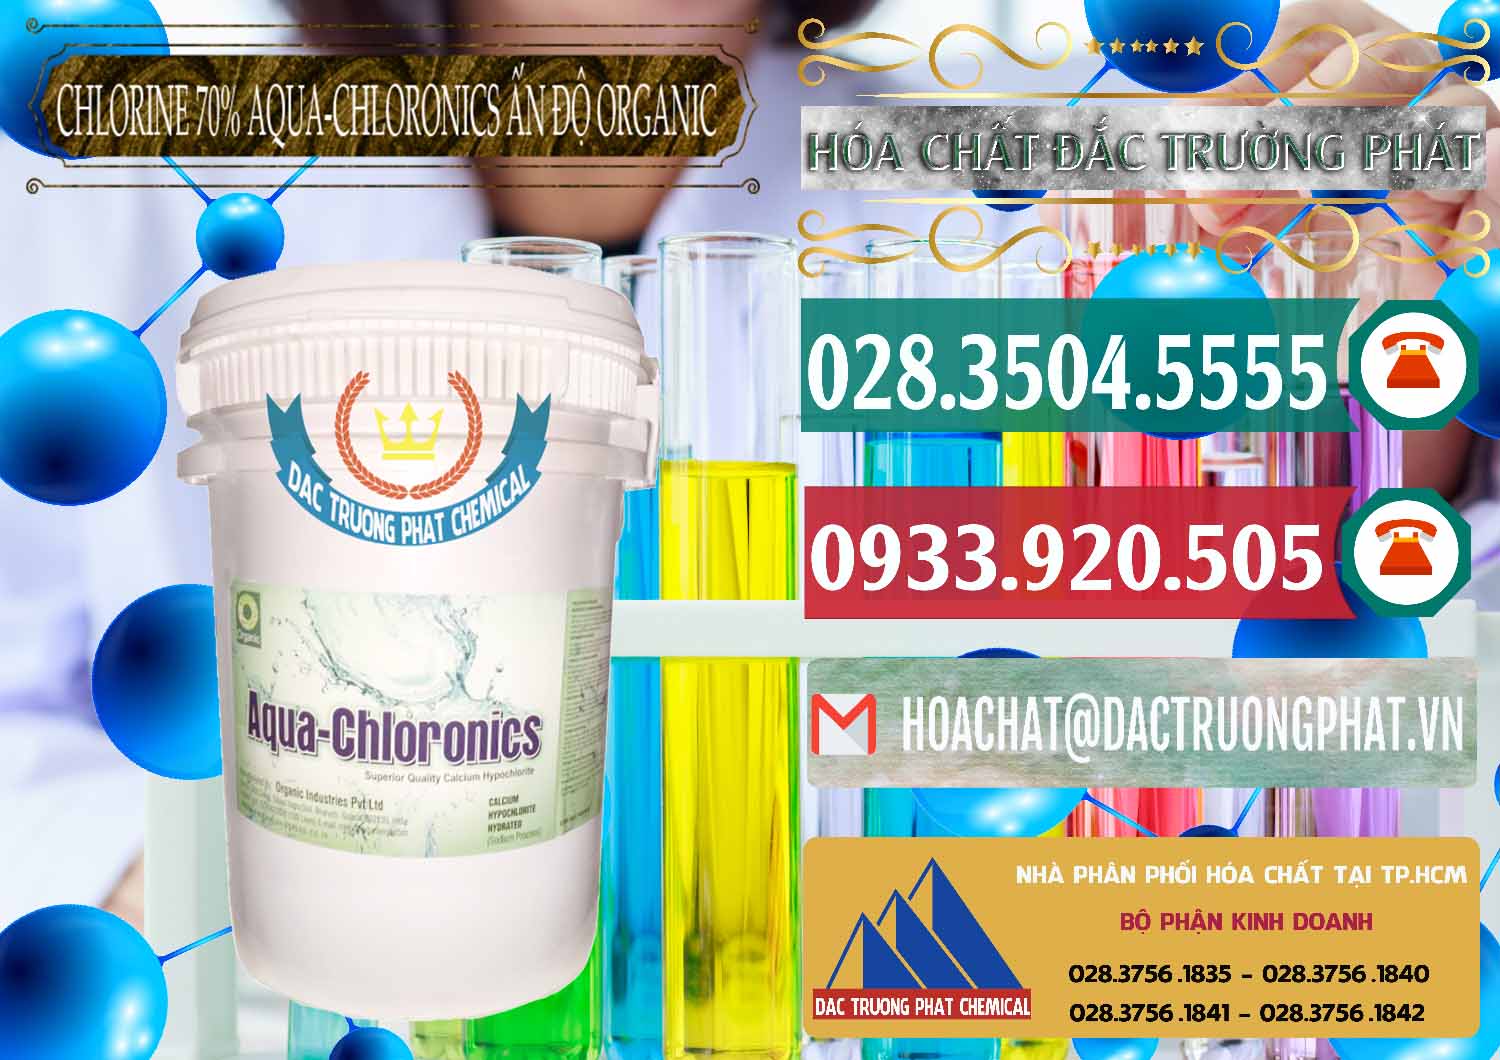 Công ty cung cấp & bán Chlorine – Clorin 70% Aqua-Chloronics Ấn Độ Organic India - 0211 - Phân phối _ cung cấp hóa chất tại TP.HCM - muabanhoachat.vn